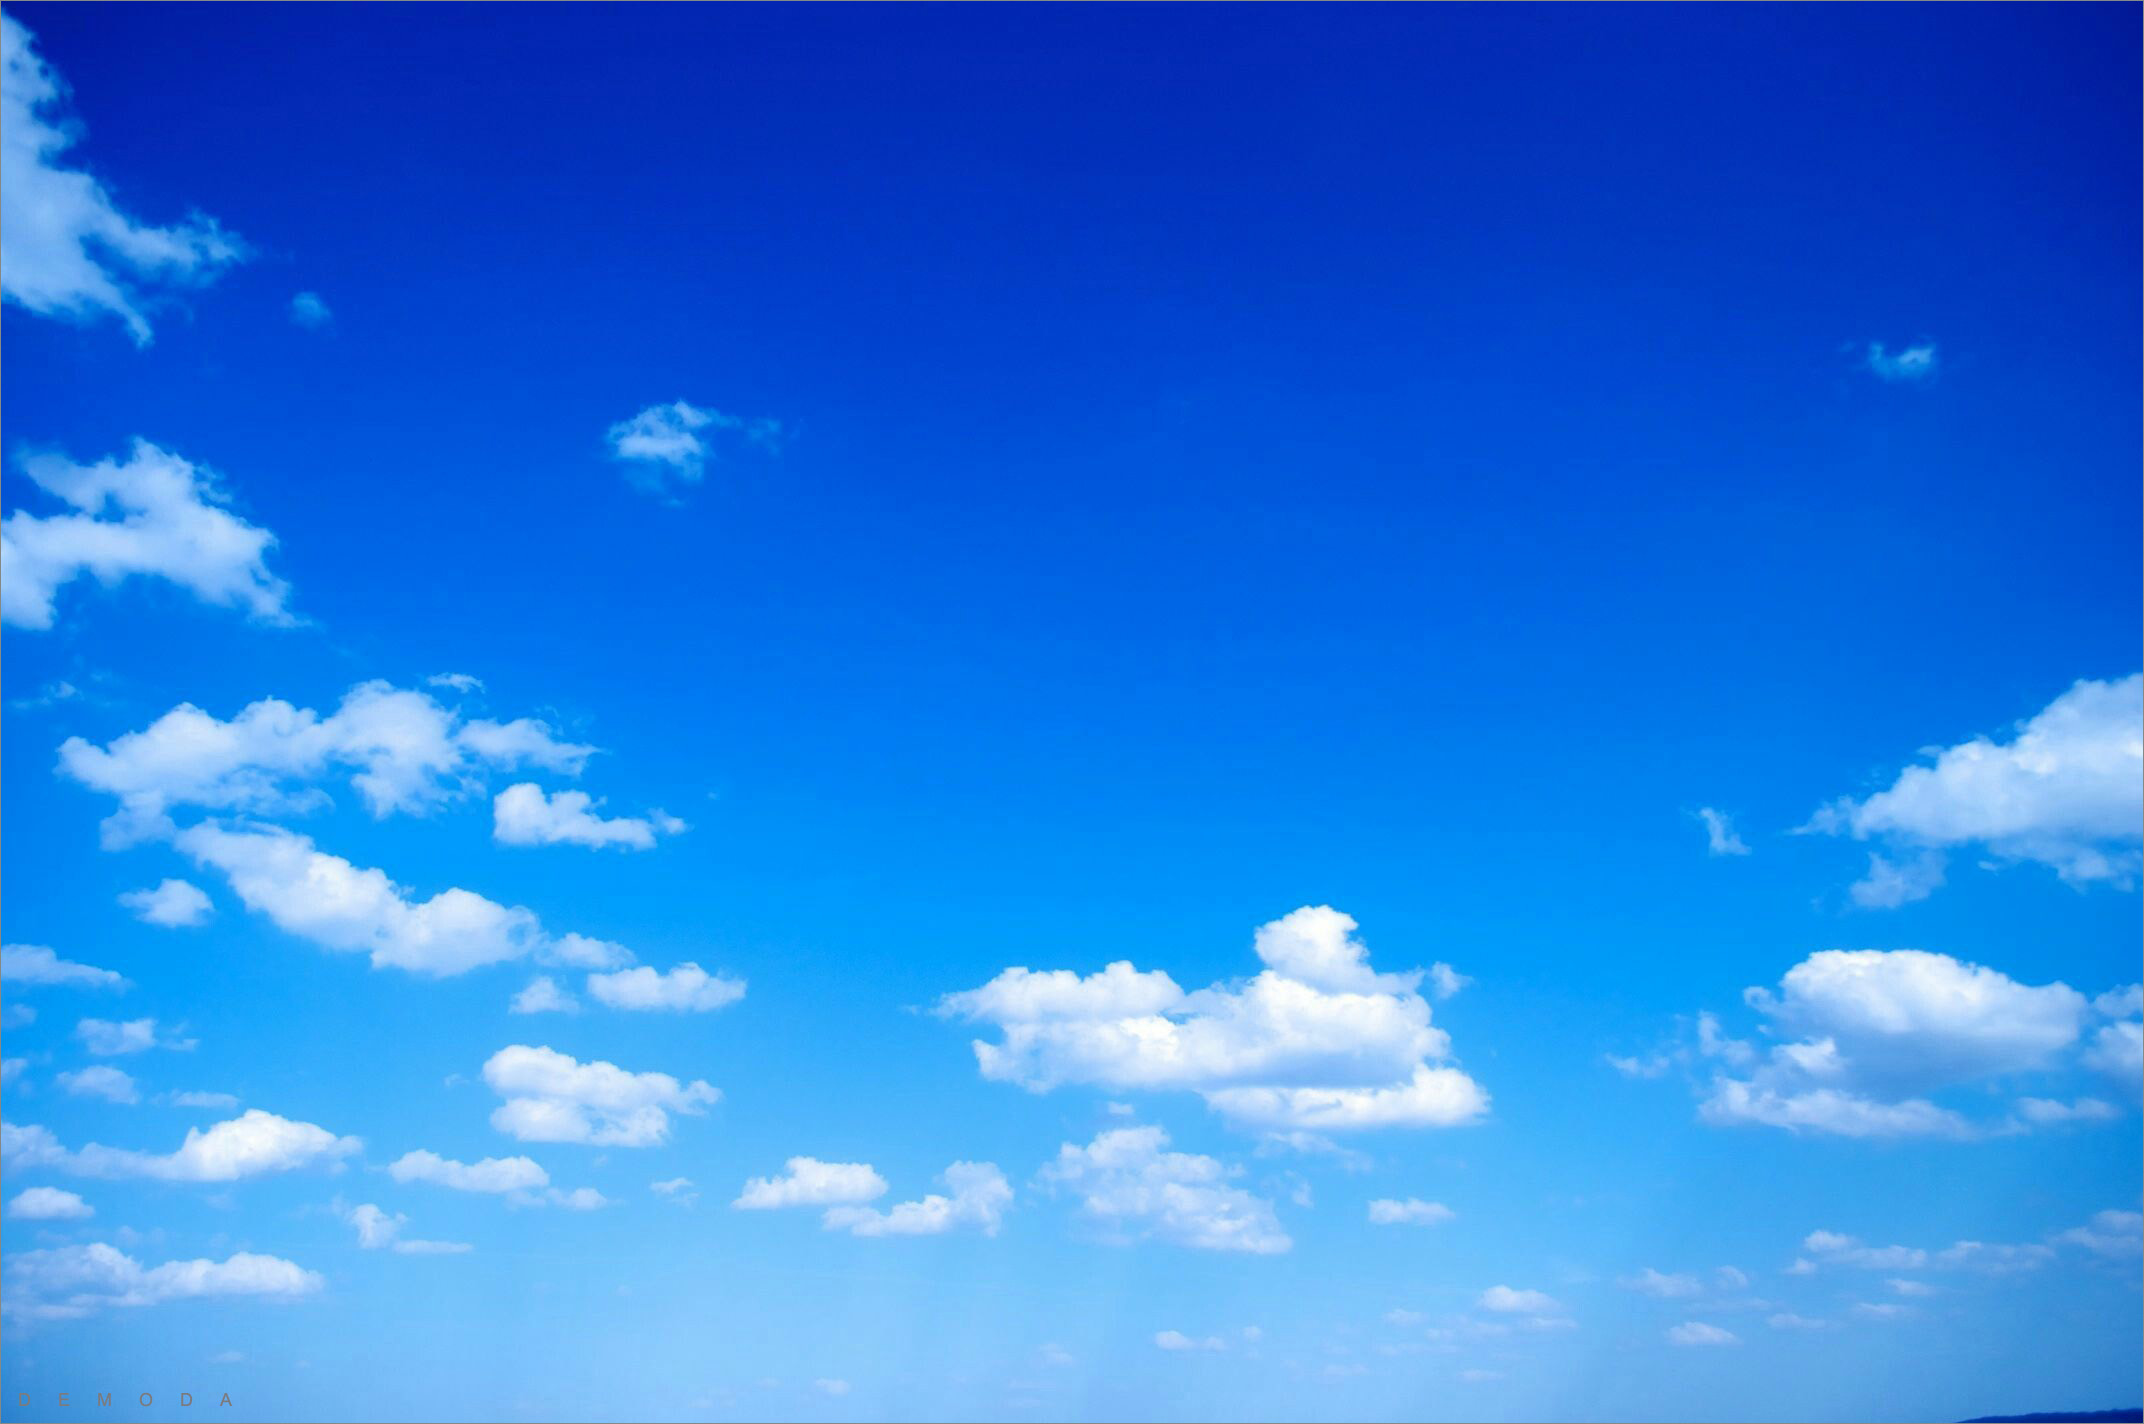 Background Bầu Trời - một màu xanh nguyên sơ và đầy cảm xúc. Hãy khám phá những hình ảnh đầy tràn sức sống này để cảm nhận được sự toả sáng của bầu trời và những mảng mây trắng tinh khôi.